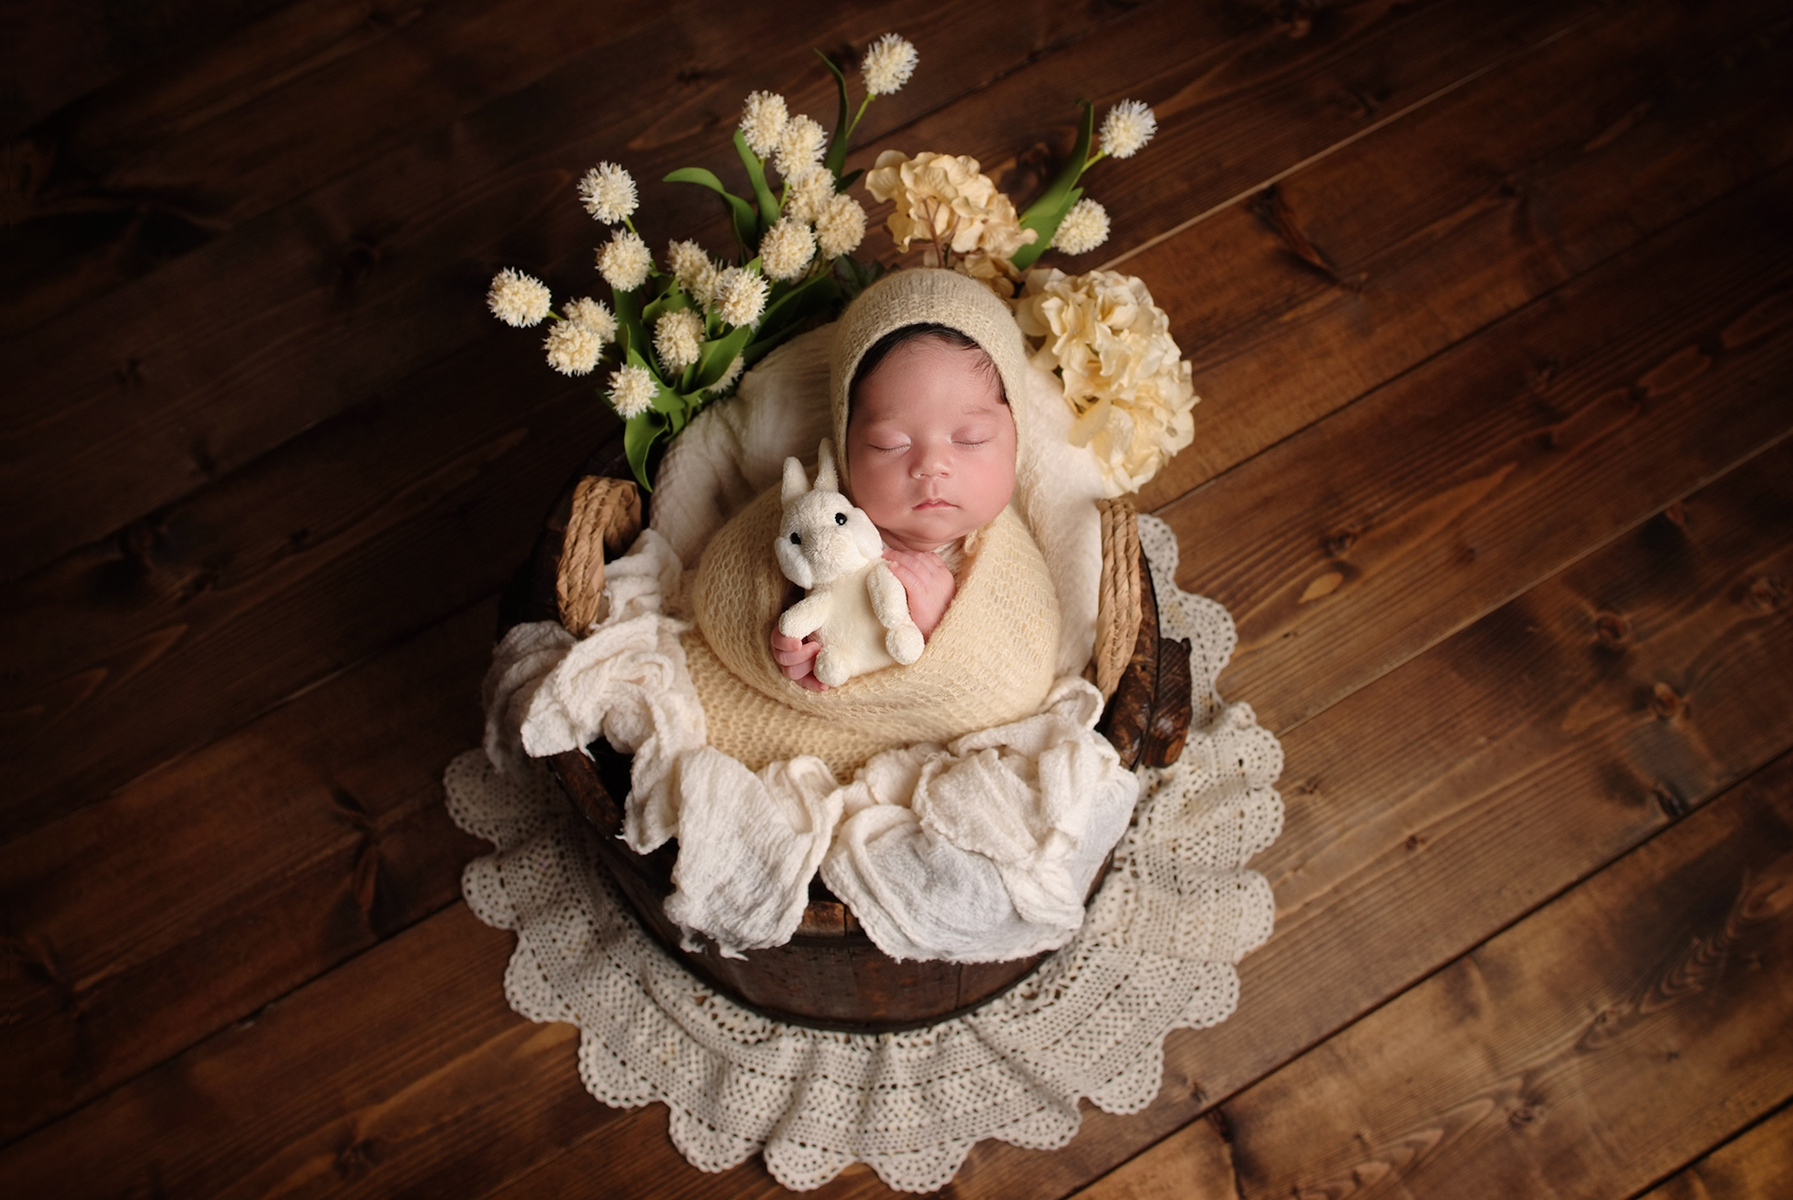 Beautiful Newborn Photography